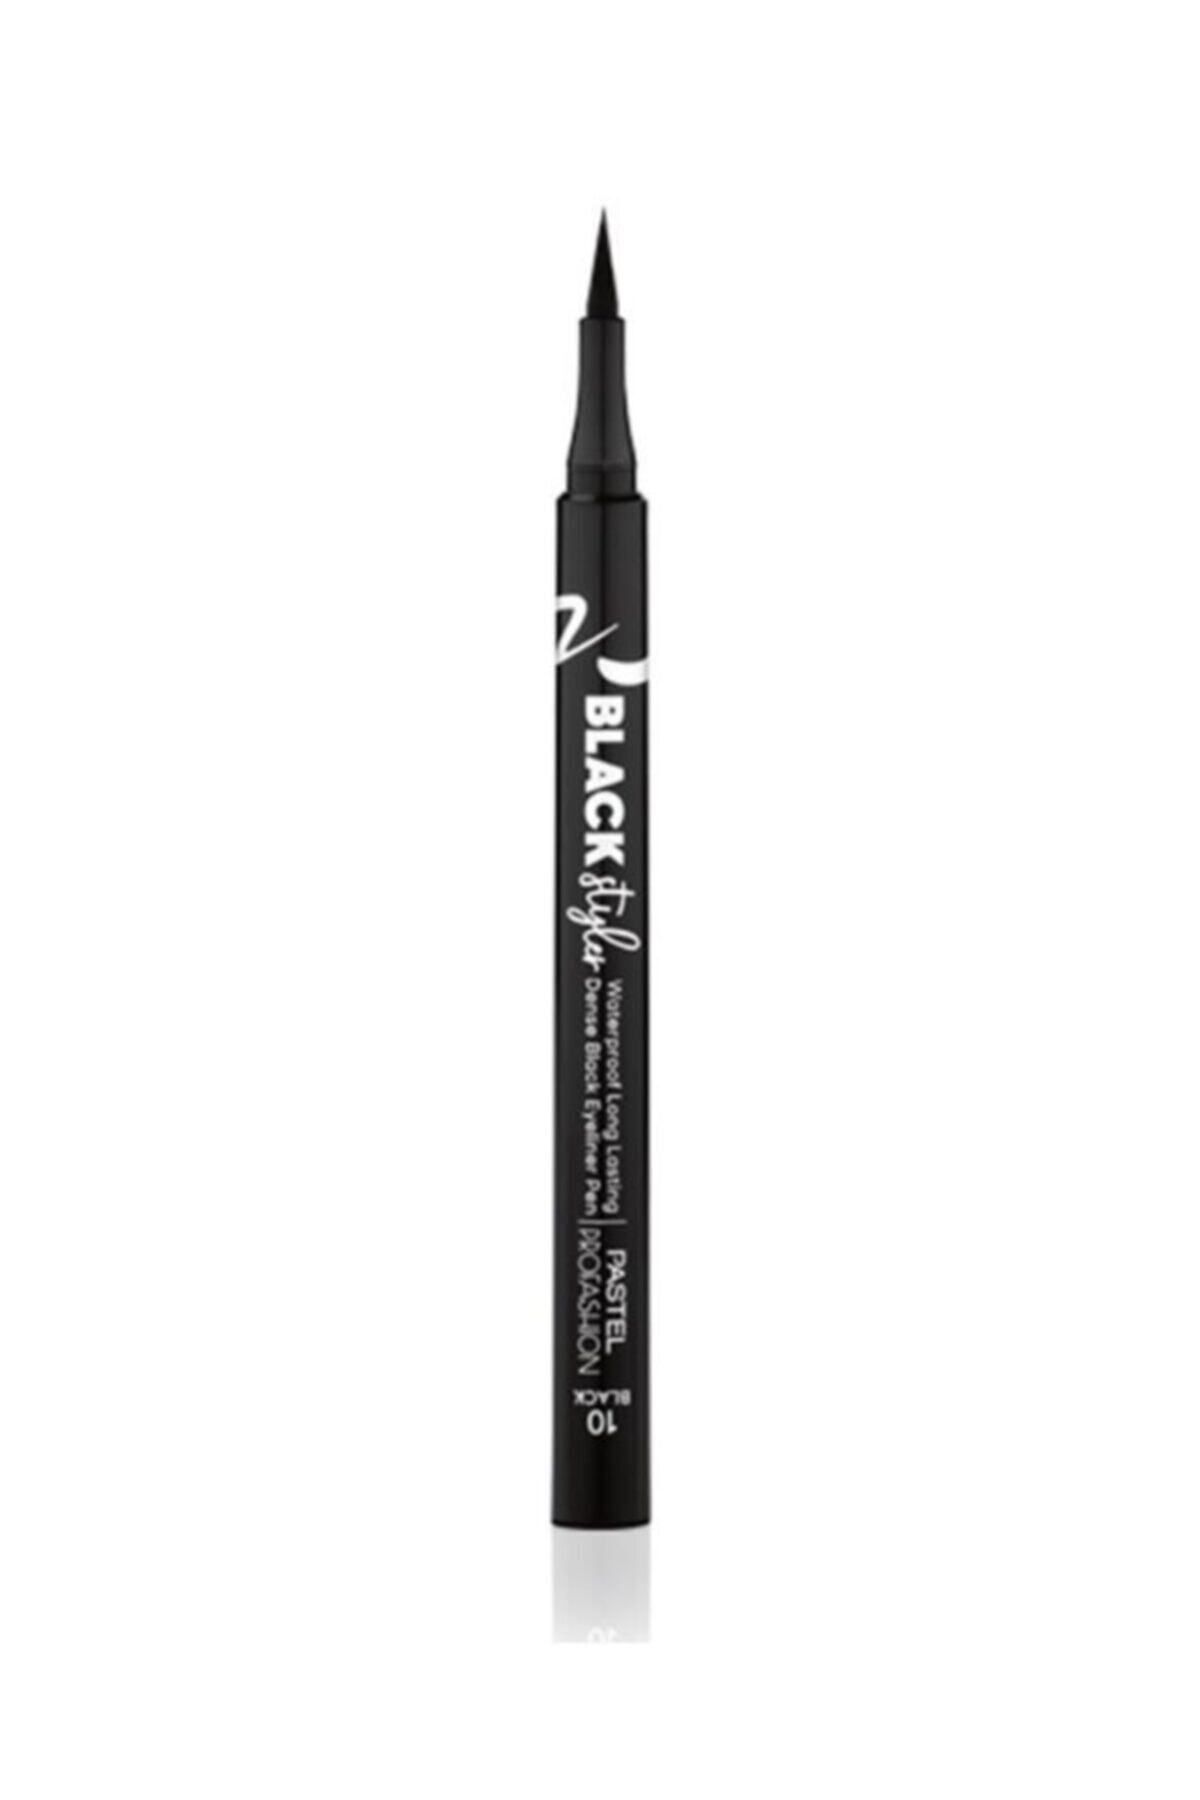 Pastel Black Styler Eyeliner Pen Waterproof Black